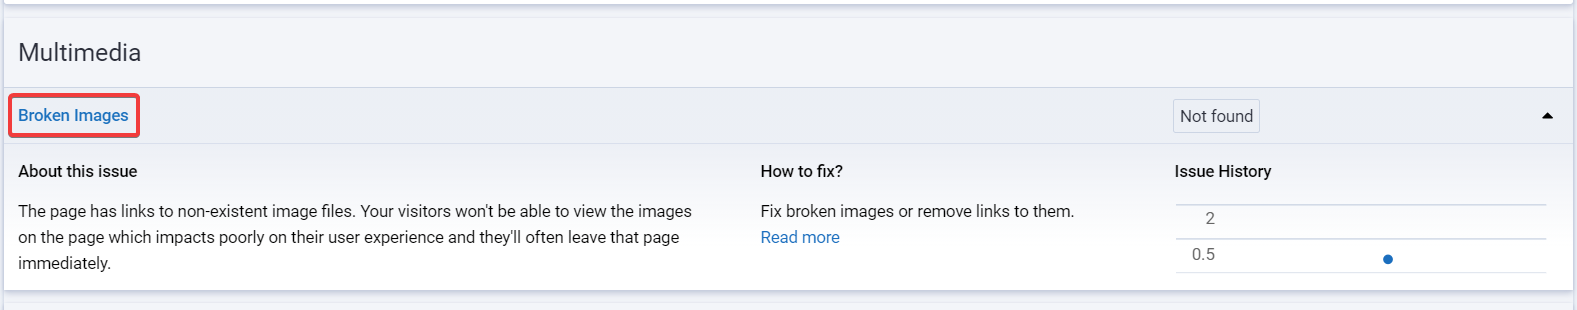 find broken images on site